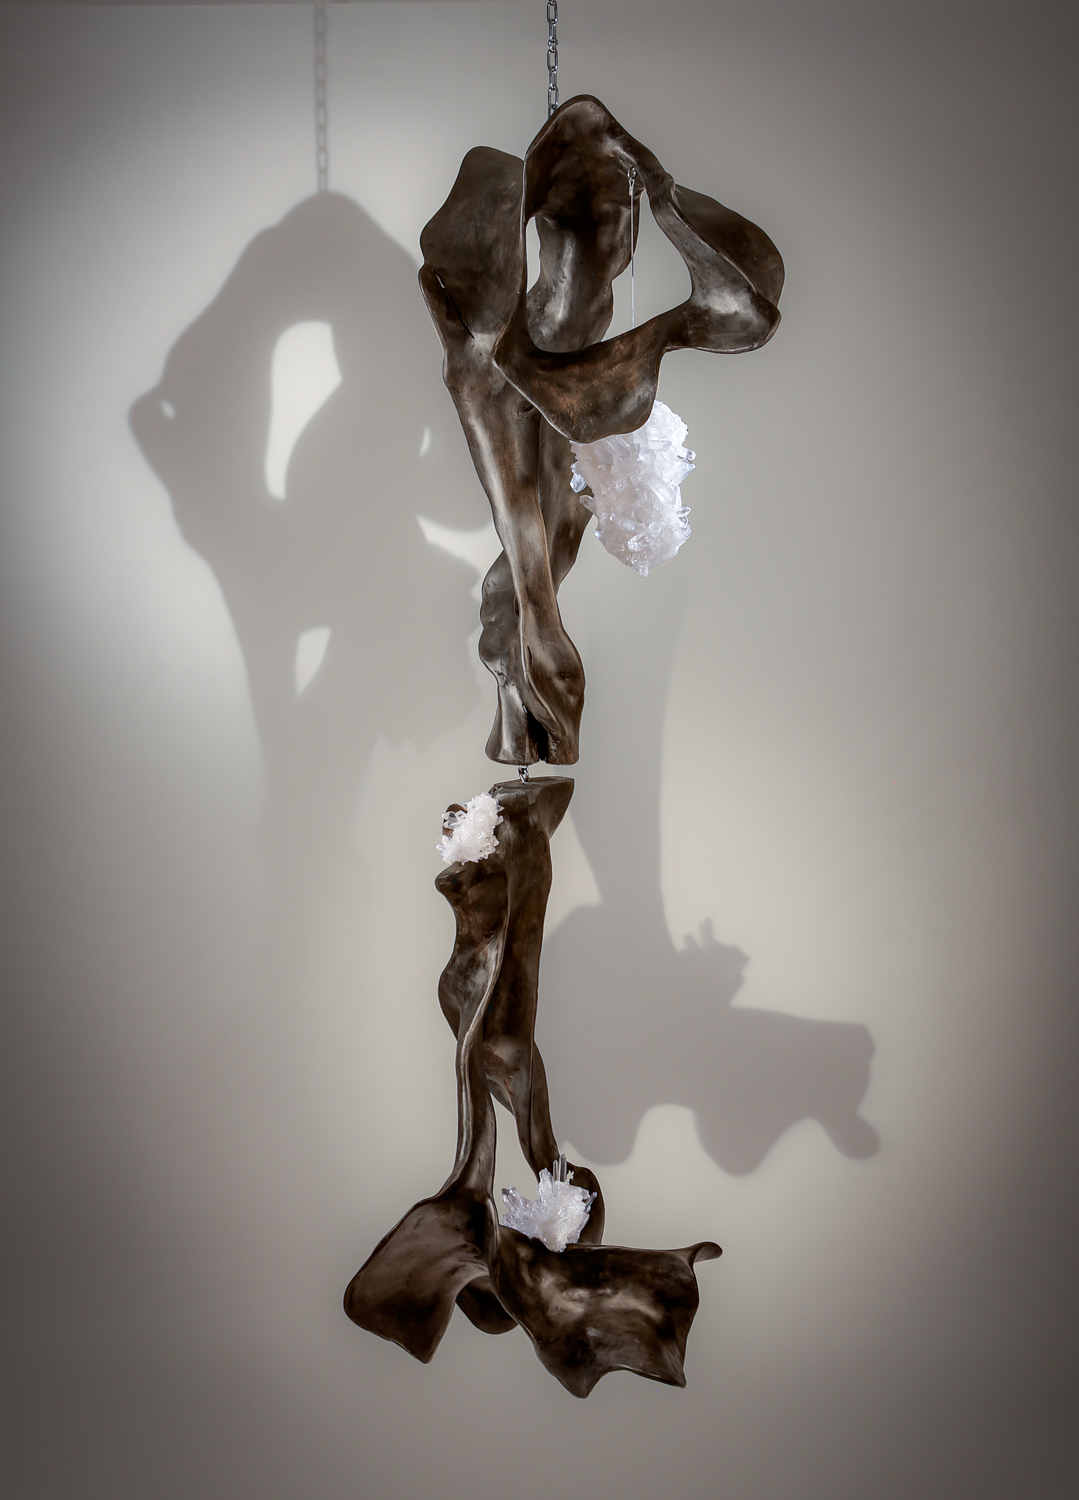 DIVINE BALANCE - Dorit Schwartz sculptor